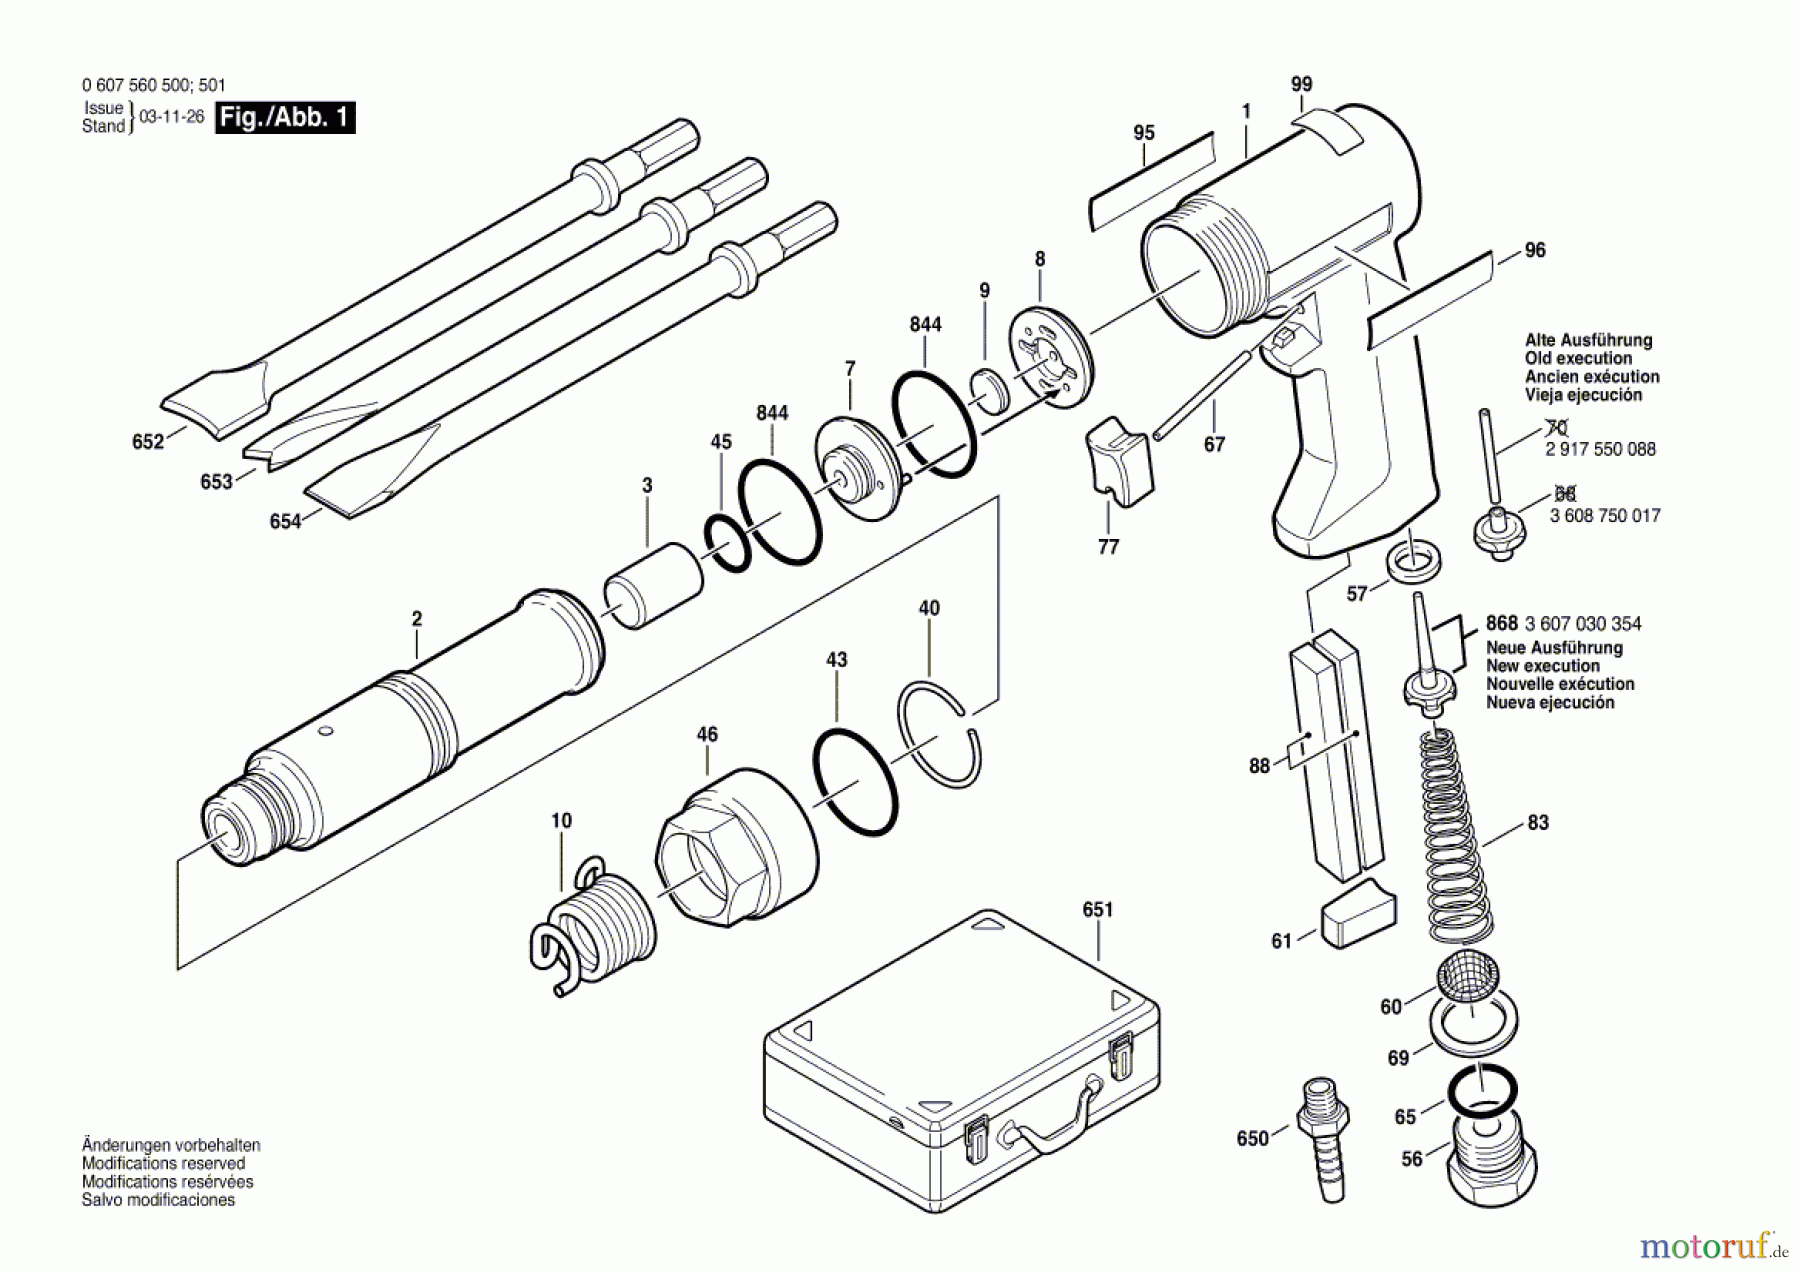  Bosch Werkzeug Pw-Meisselhammer-Serv ---- Seite 1